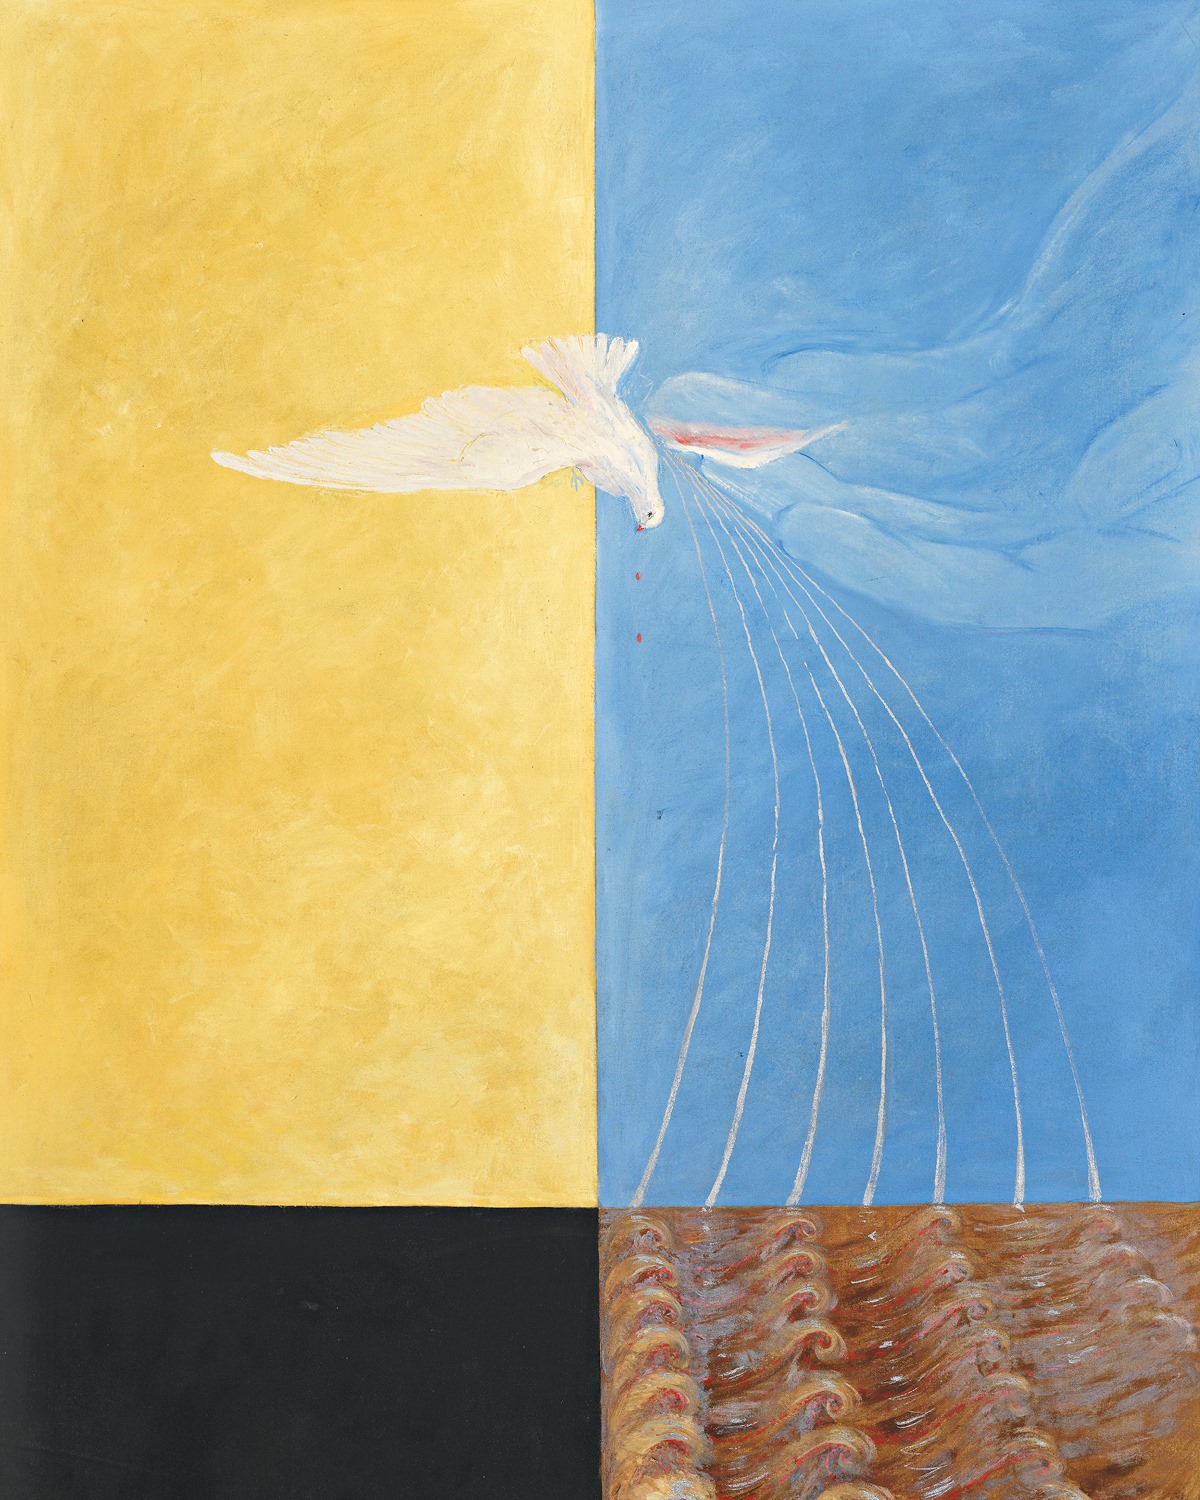 鸽子4号 by 希尔玛·阿芙 克林特 - 1915 - 152 x 115.5 cm 